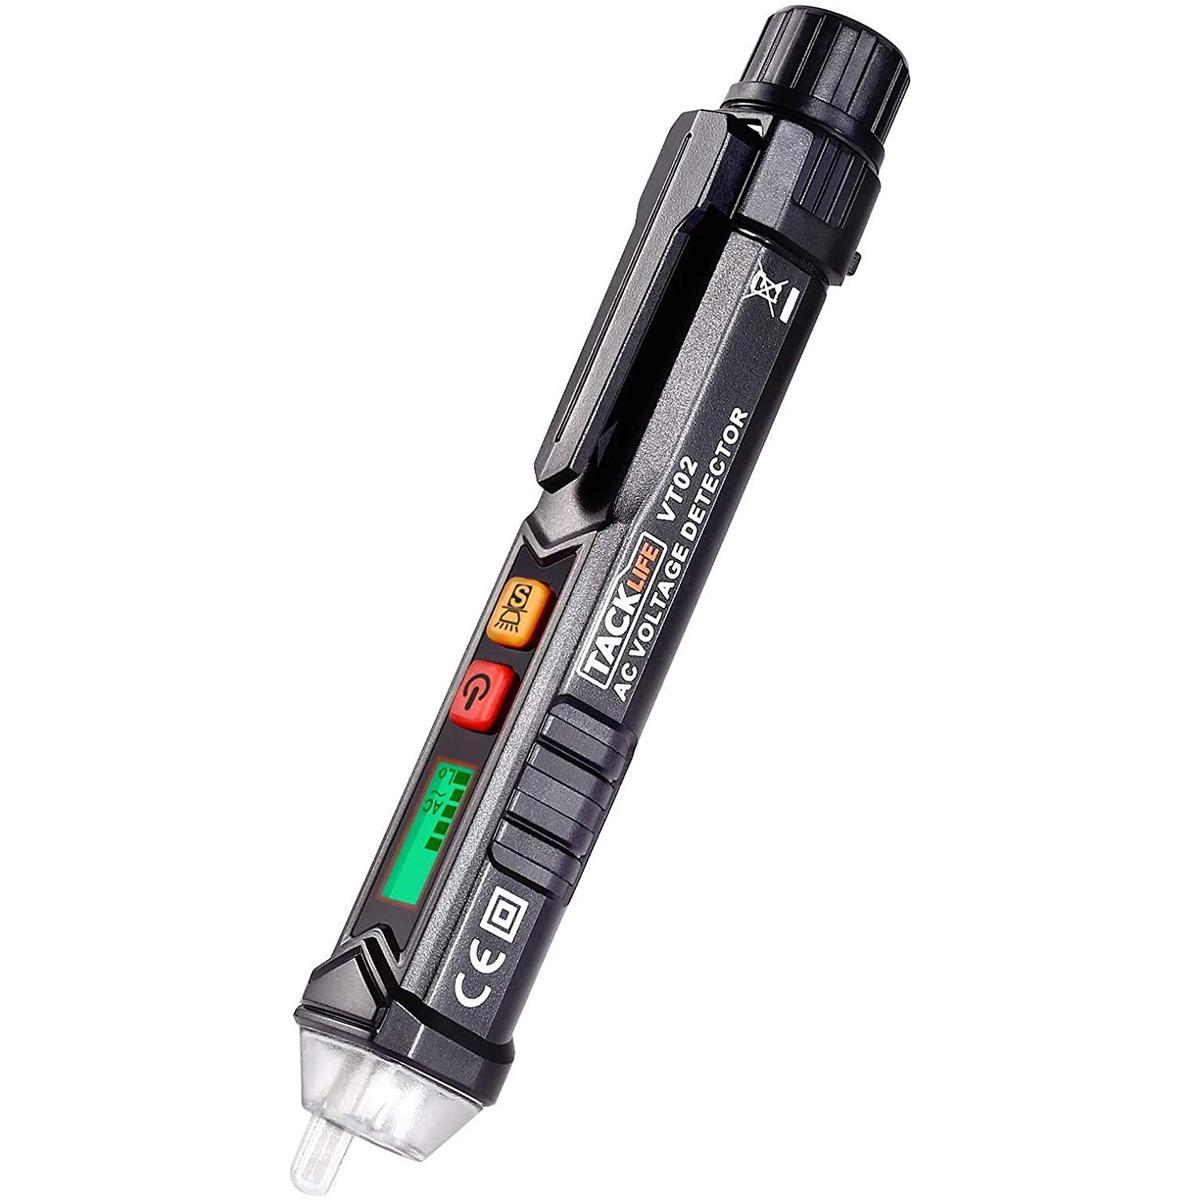 Tacklife Non-Contact AC Voltage Tester Pen for $8.85